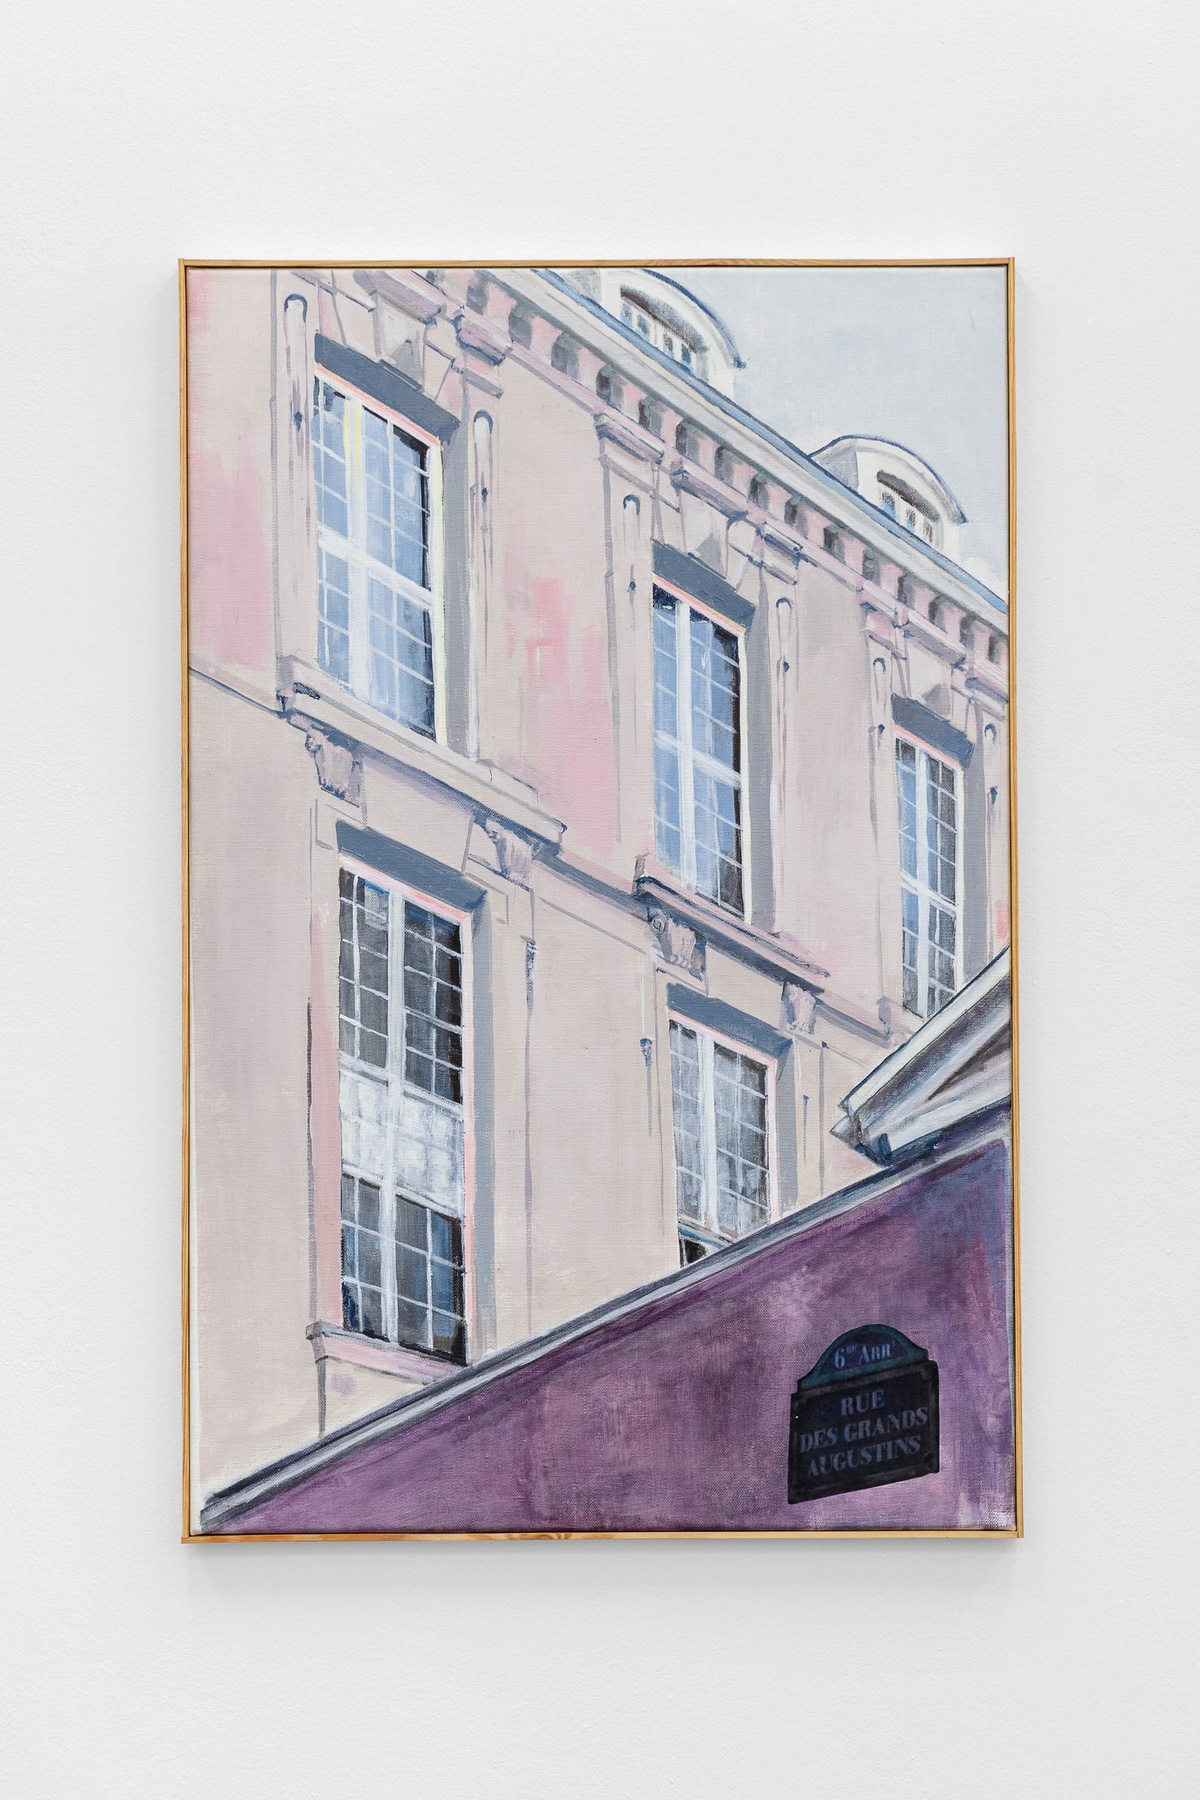 7 rue des Grands Augustins by Ariane Müller